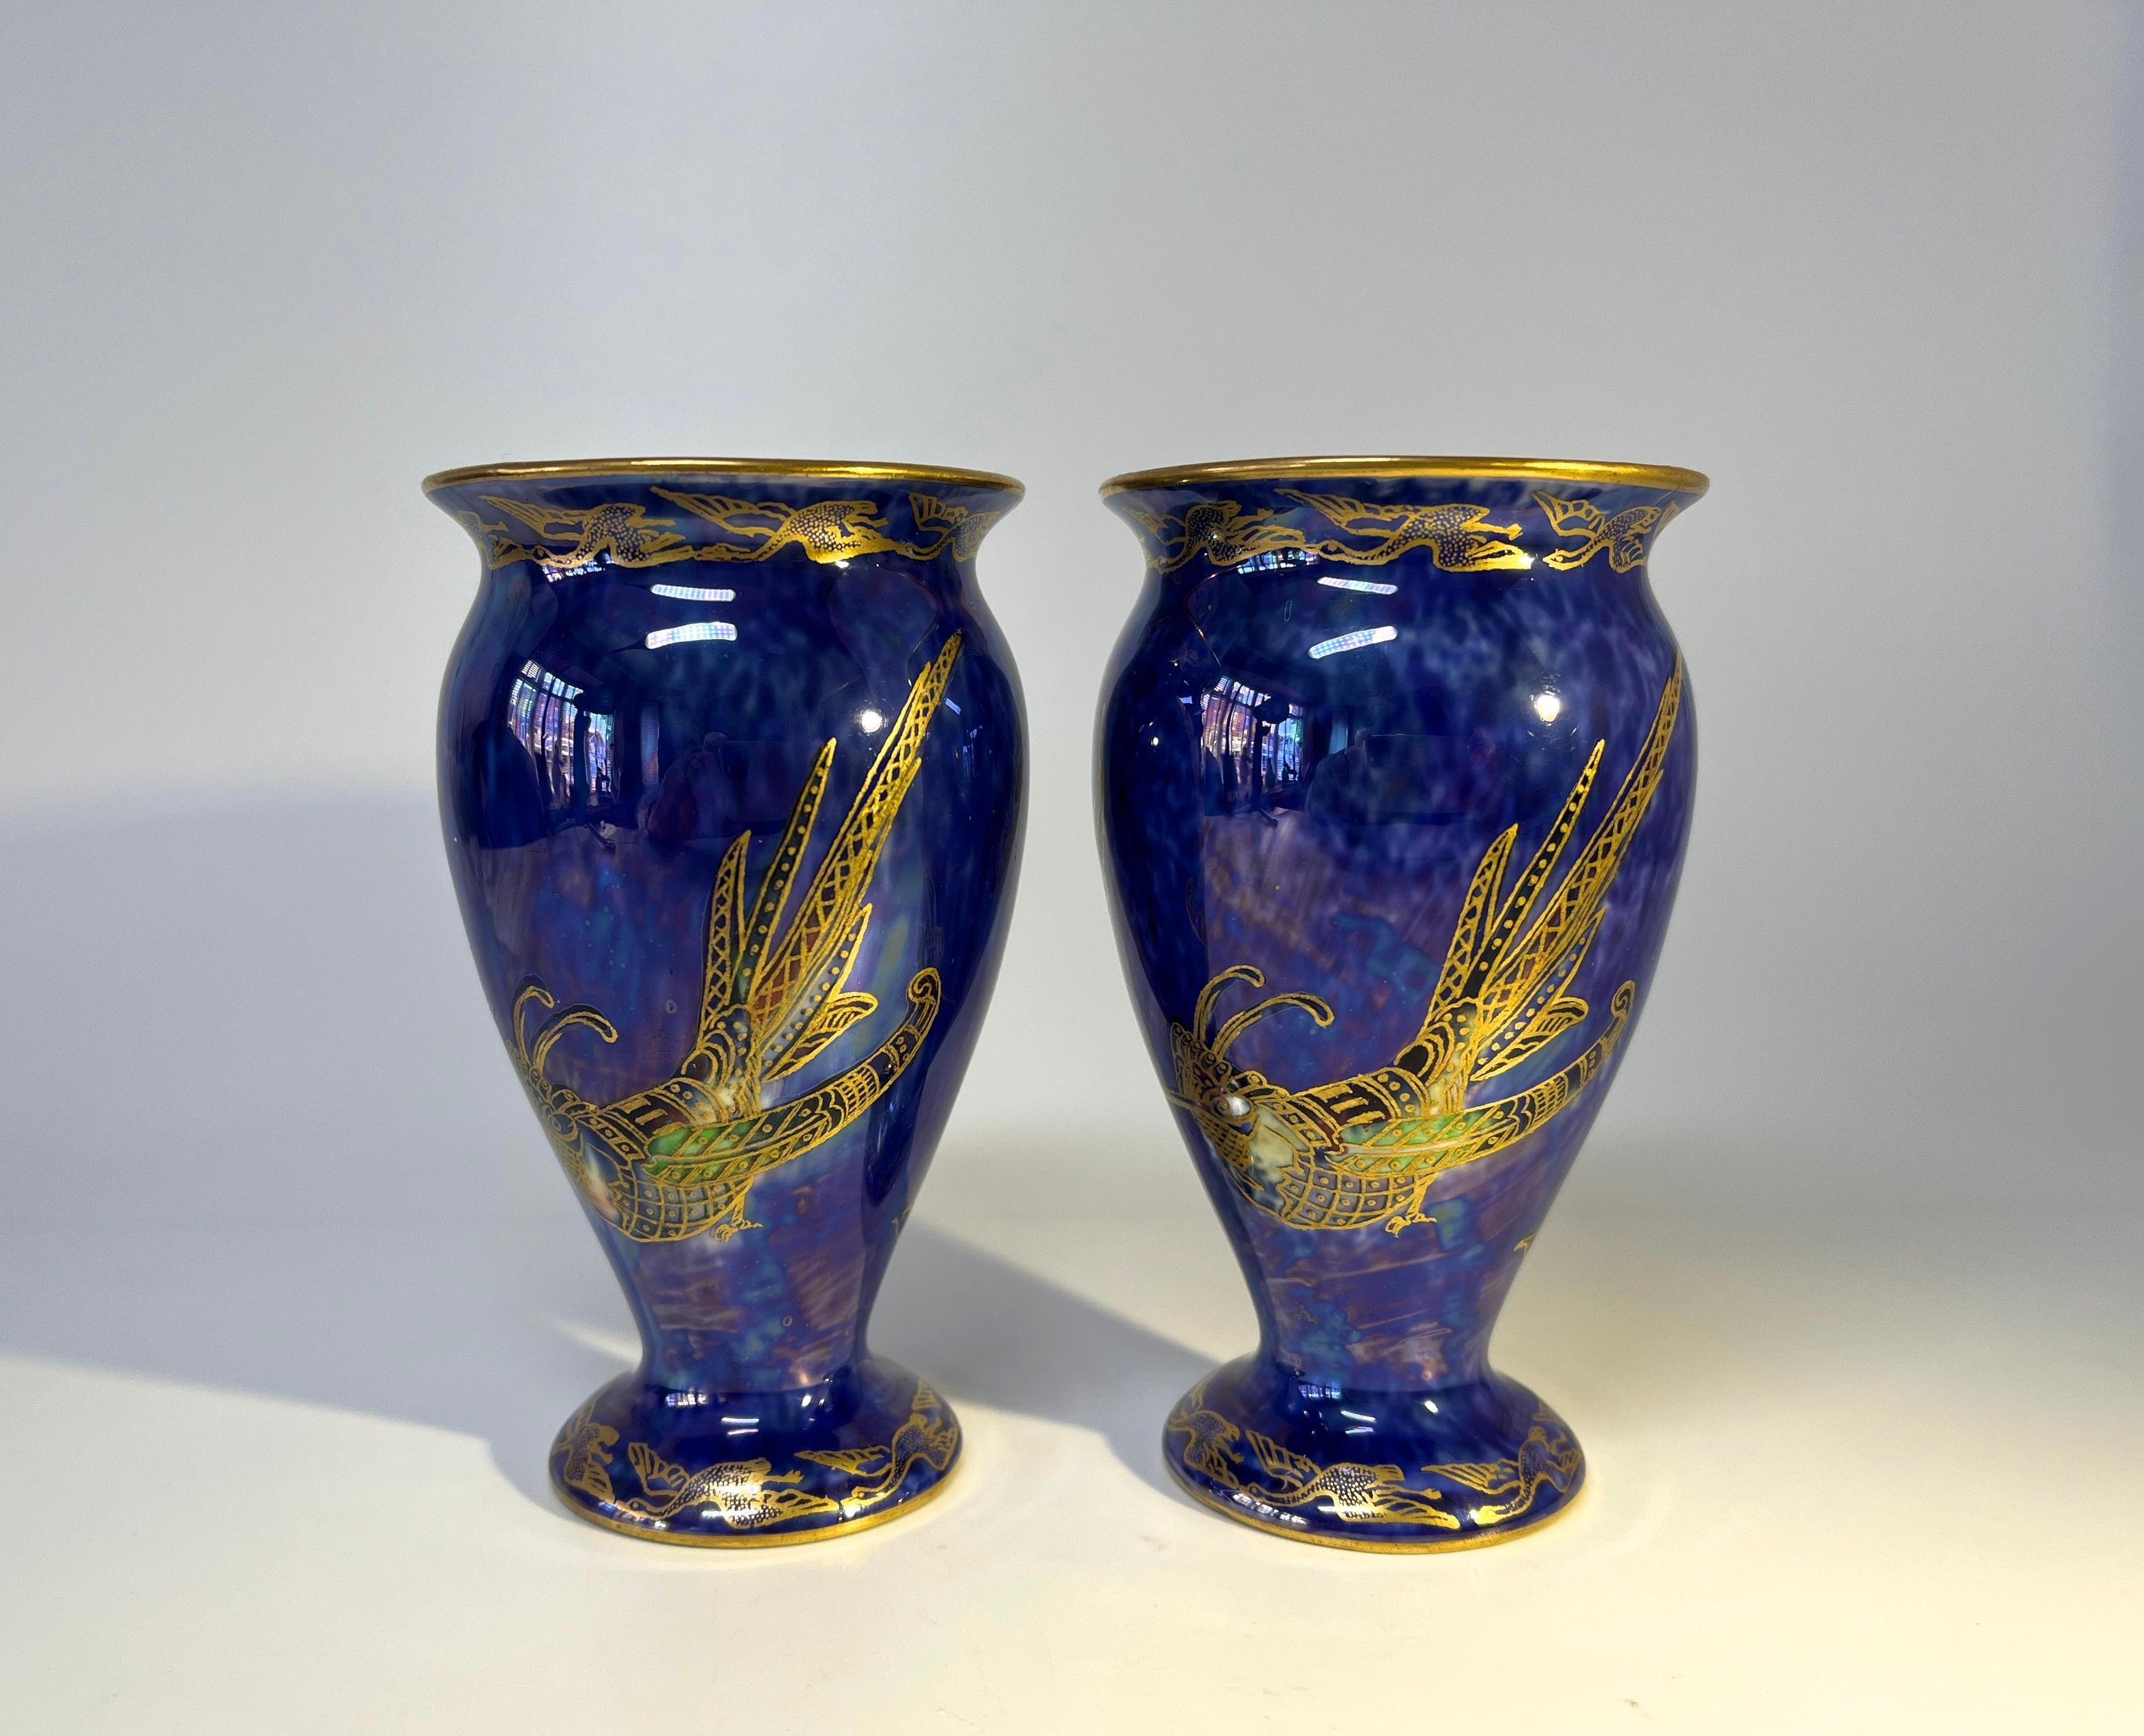 Paire exquise de vases balustres lustrés ordinaires de Wedgwood par Daisy Makeig-Jones. Circa 1915.
Dominée par de spectaculaires oiseaux exotiques dorés à crête sur un fond bleu royal chiné d'une incroyable richesse.
Des oies volantes dorées